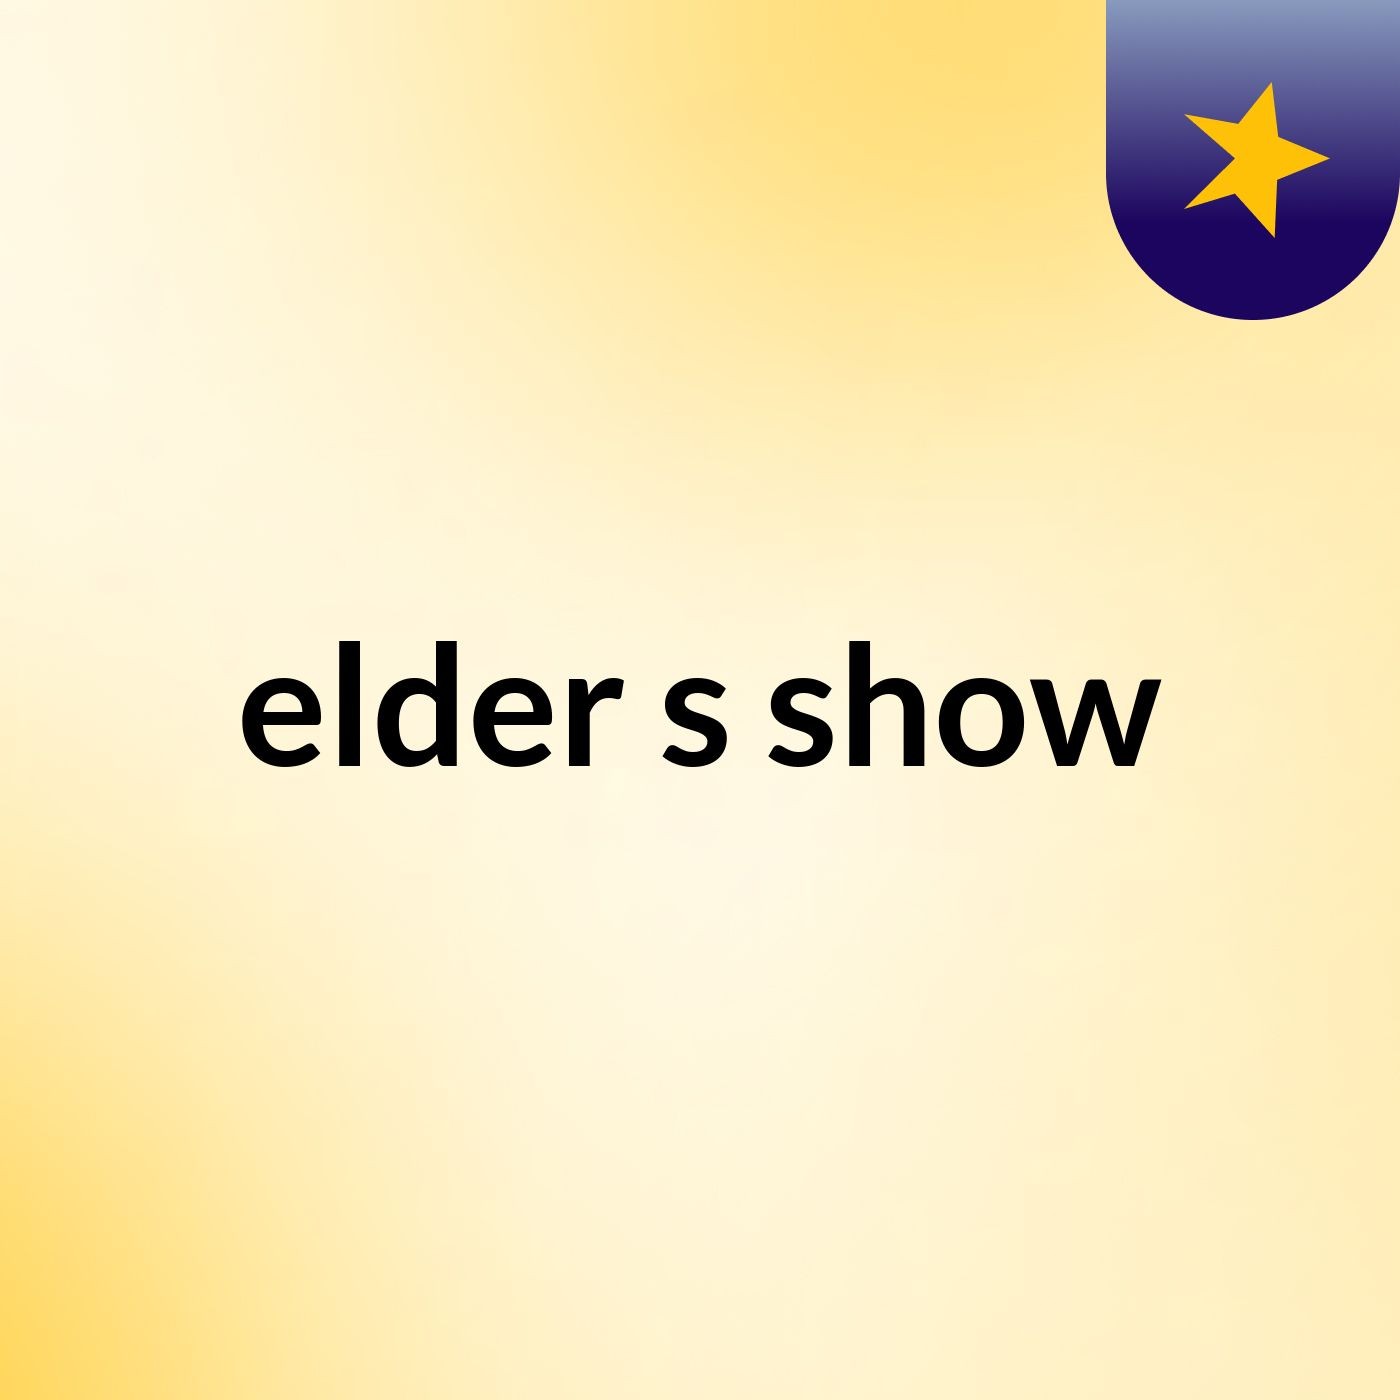 elder's show